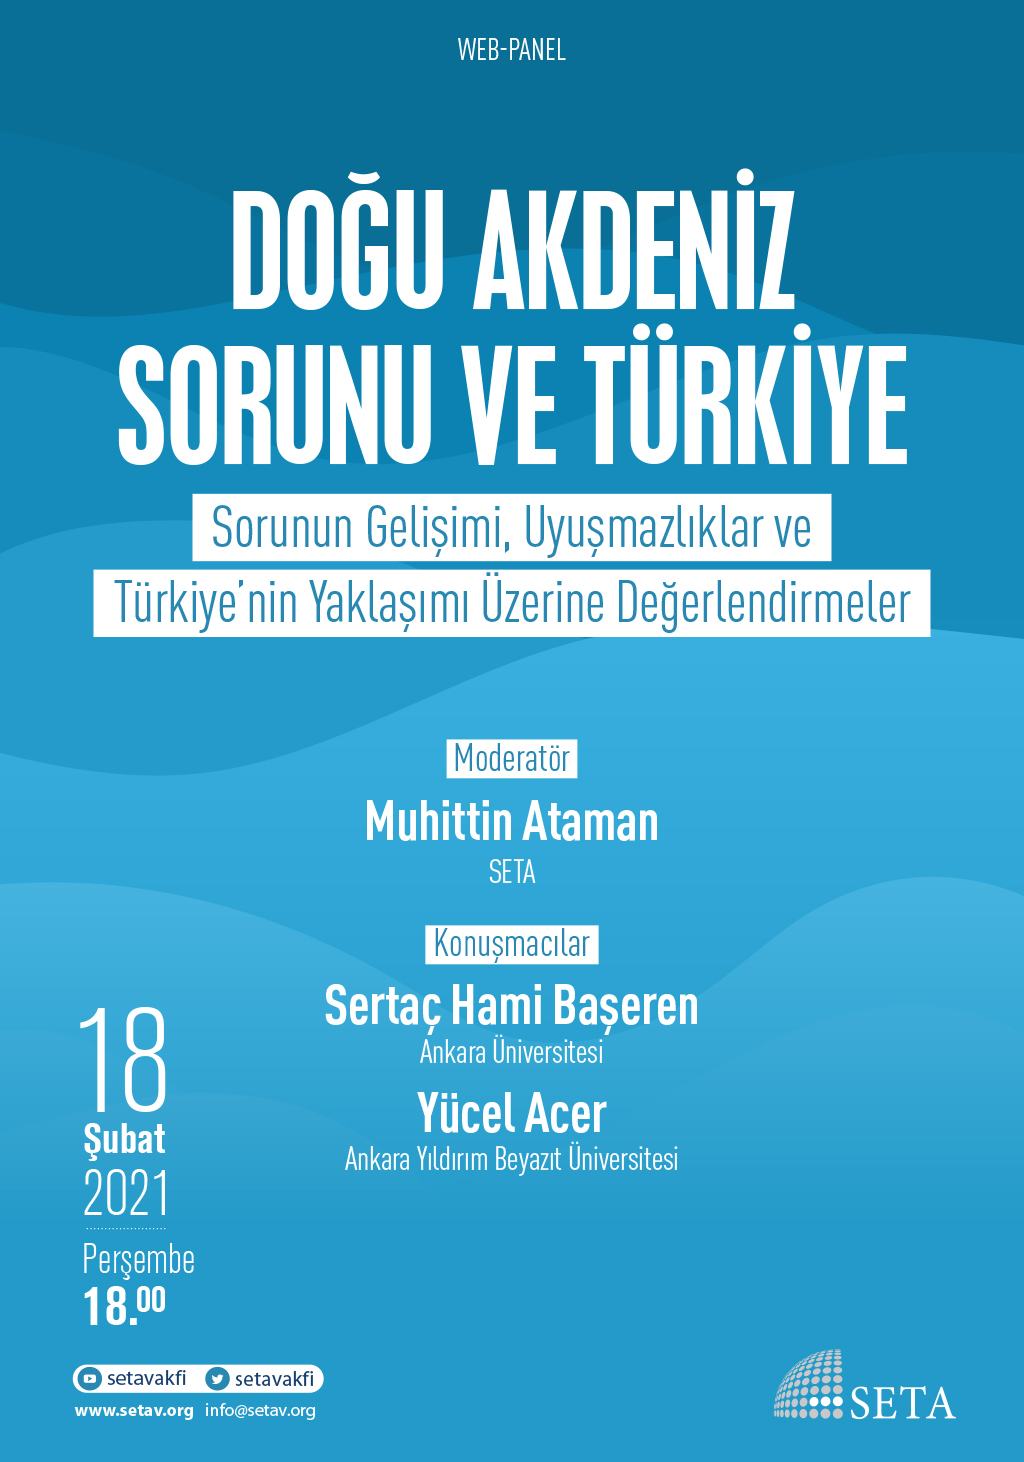 Web Panel: Doğu Akdeniz Sorunu ve Türkiye | Sorunun Gelişimi, Uyuşmazlıklar ve Türkiye’nin Yaklaşımı Üzerine Değerlendirmeler